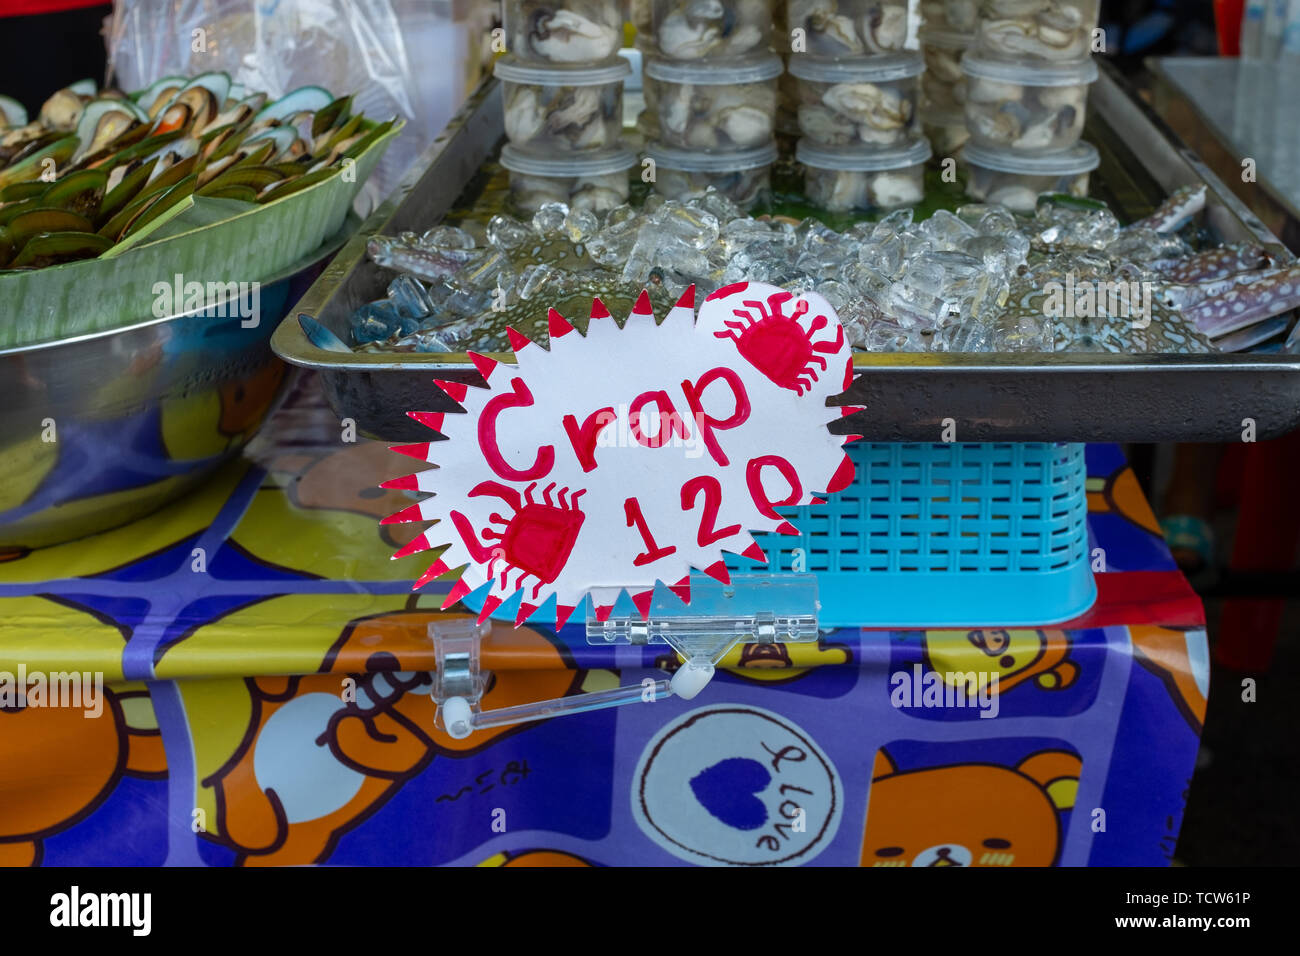 Une nourriture mal orthographié à signer un marché alimentaire de la rue de Stalle Krabi, Thaïlande, le signe se lit Crap alors qu'il devrait être le crabe, personne dans l'image Banque D'Images